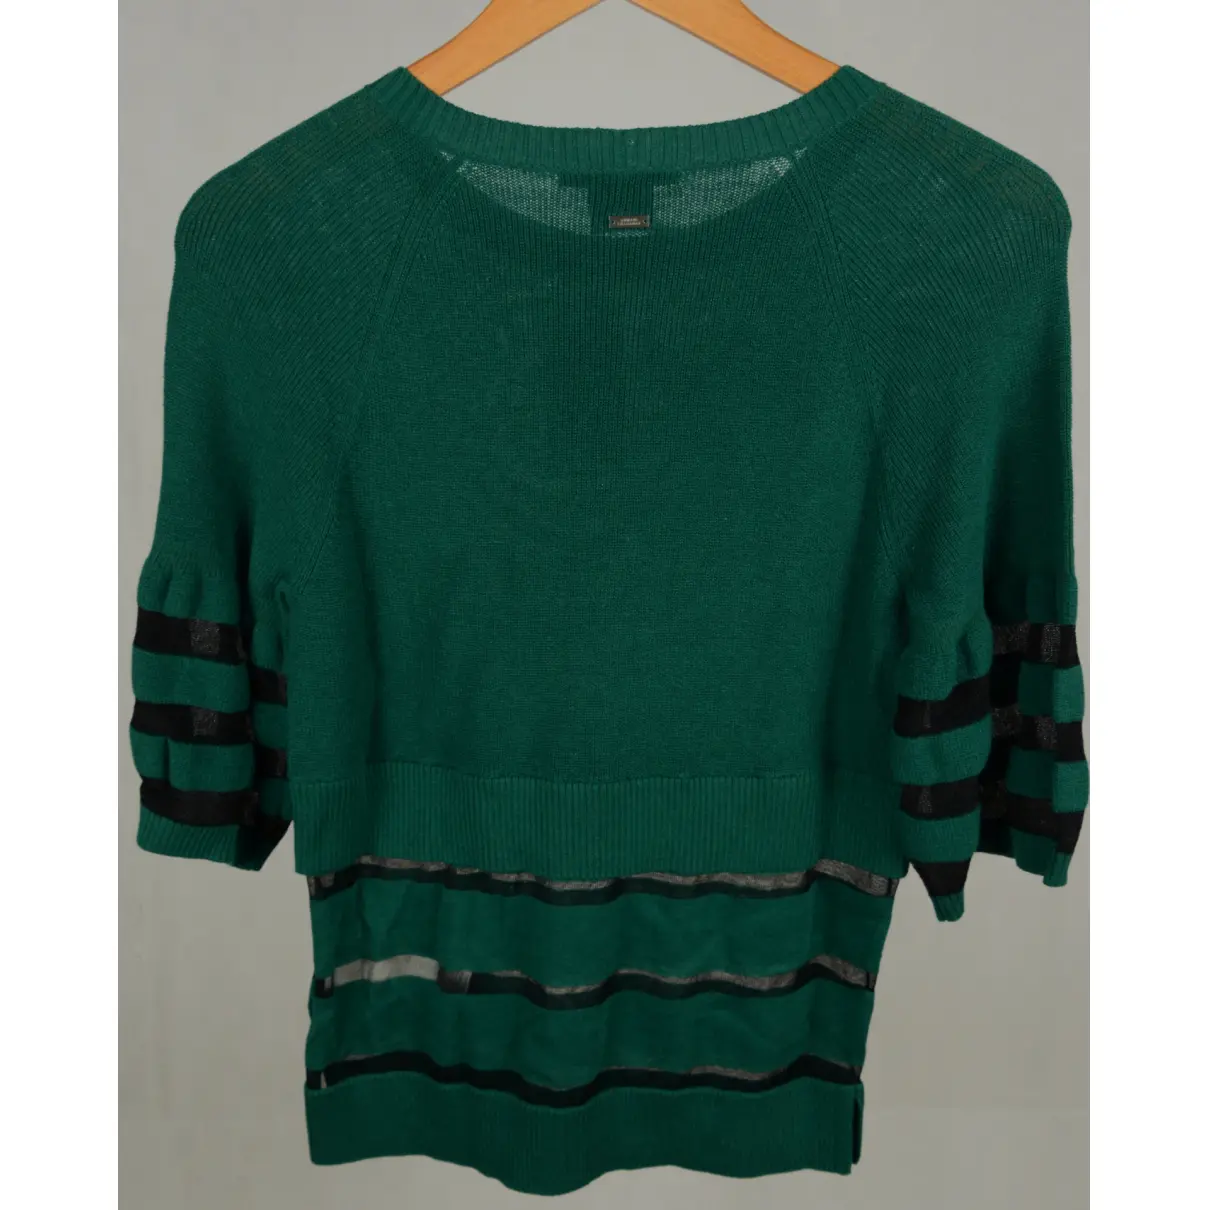 Buy Armani Exchange Knitwear online